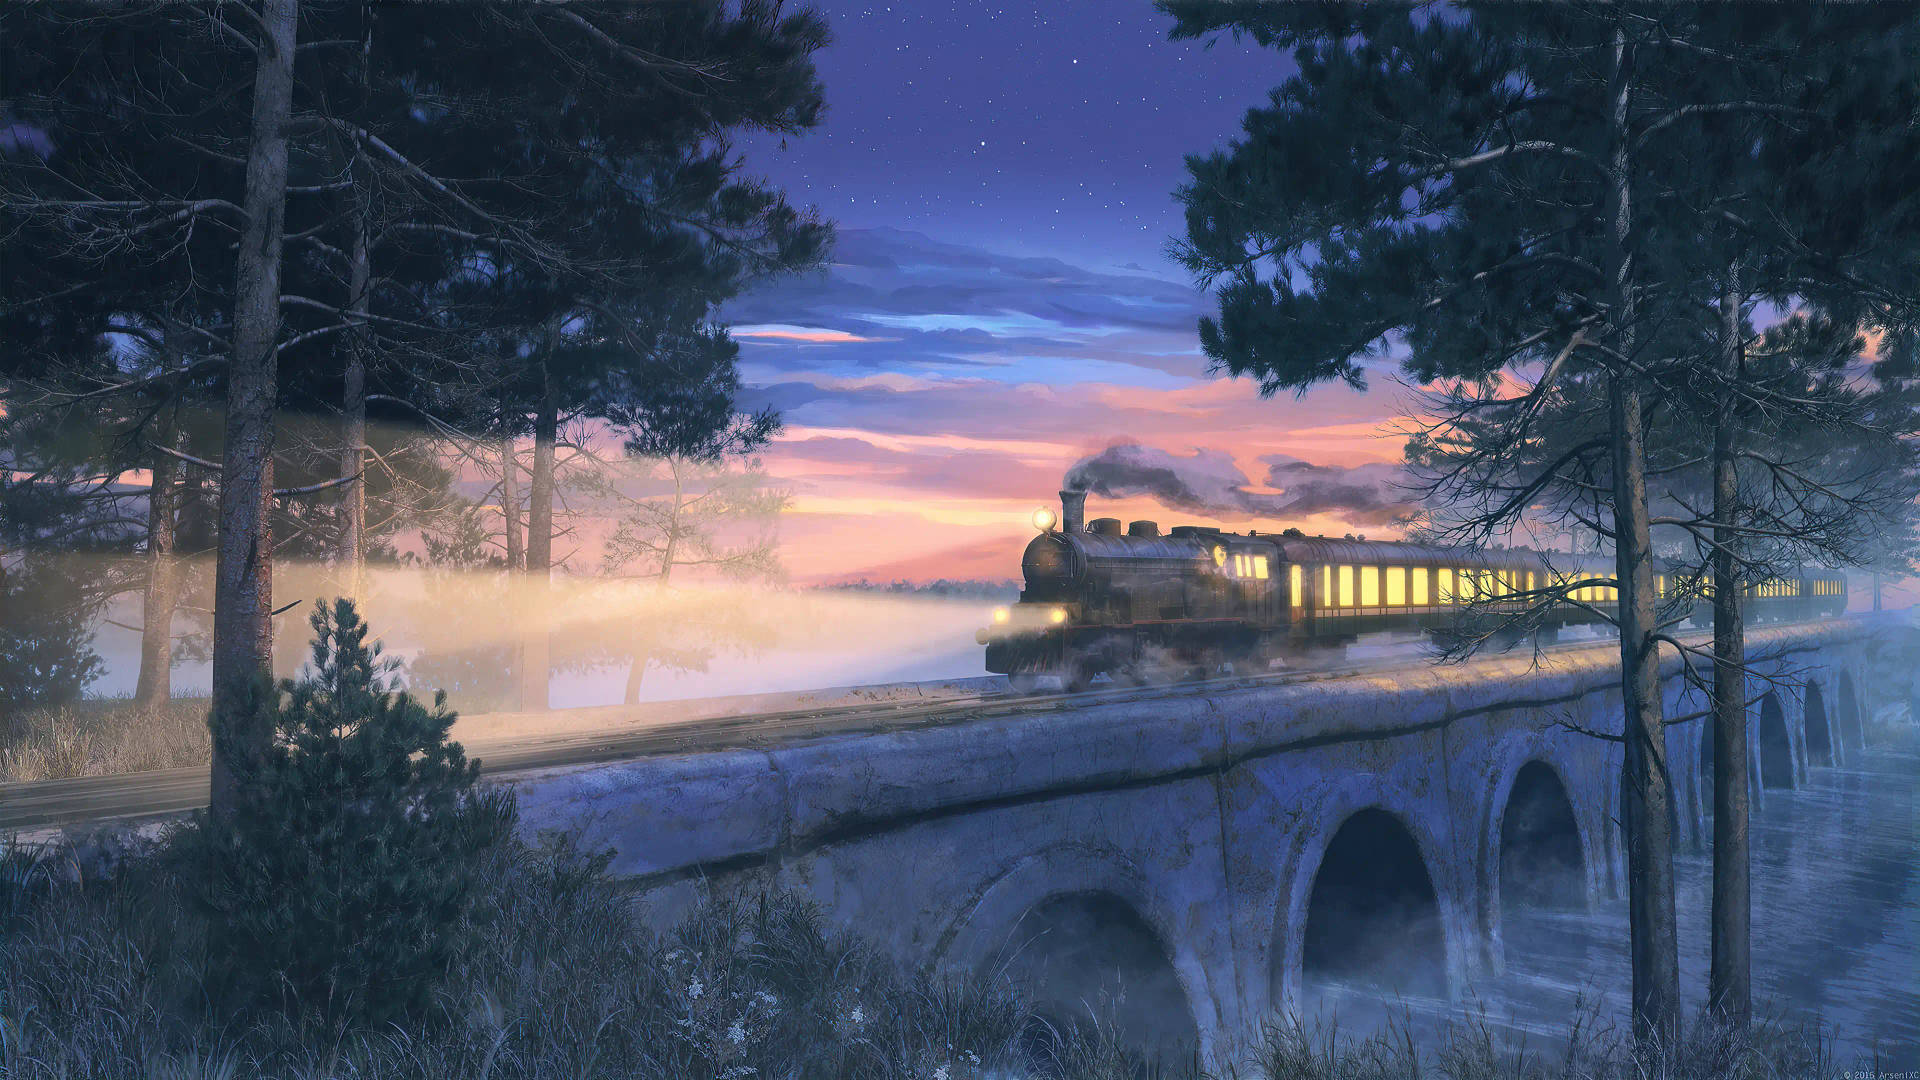 Midnight Express Train Background